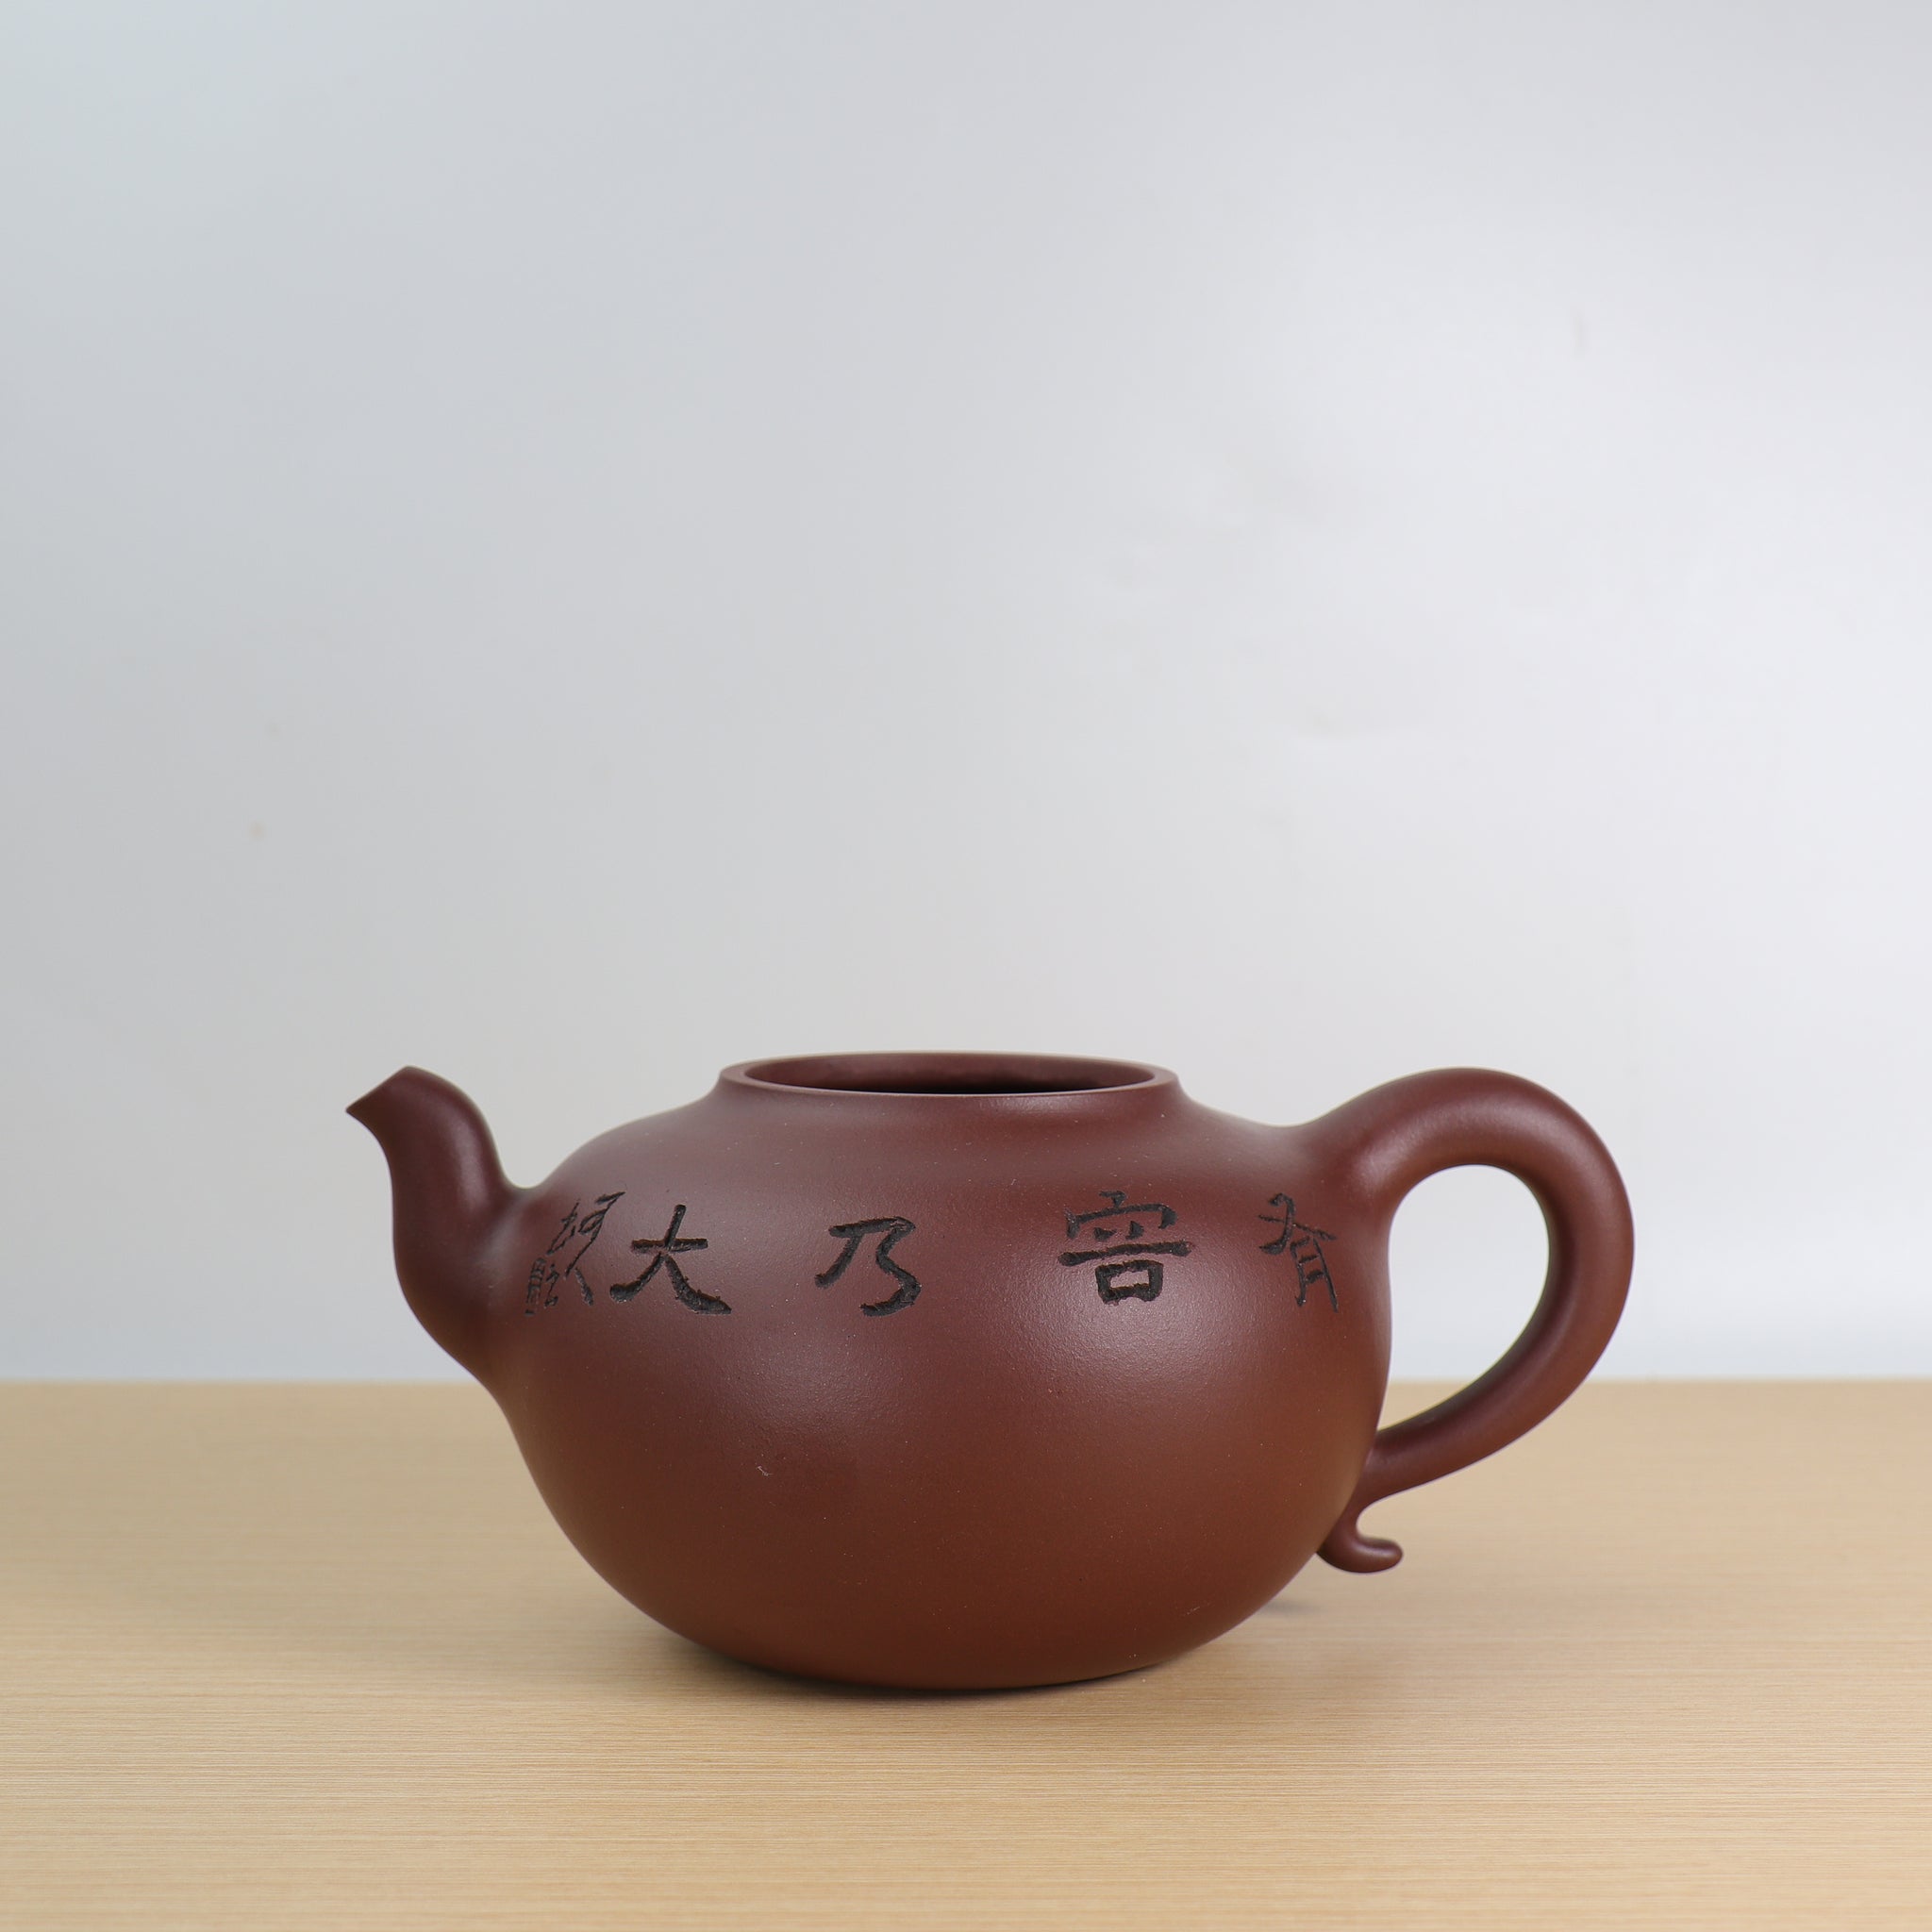 【葫蘆】原礦棗紅泥刻詞紫砂茶壺